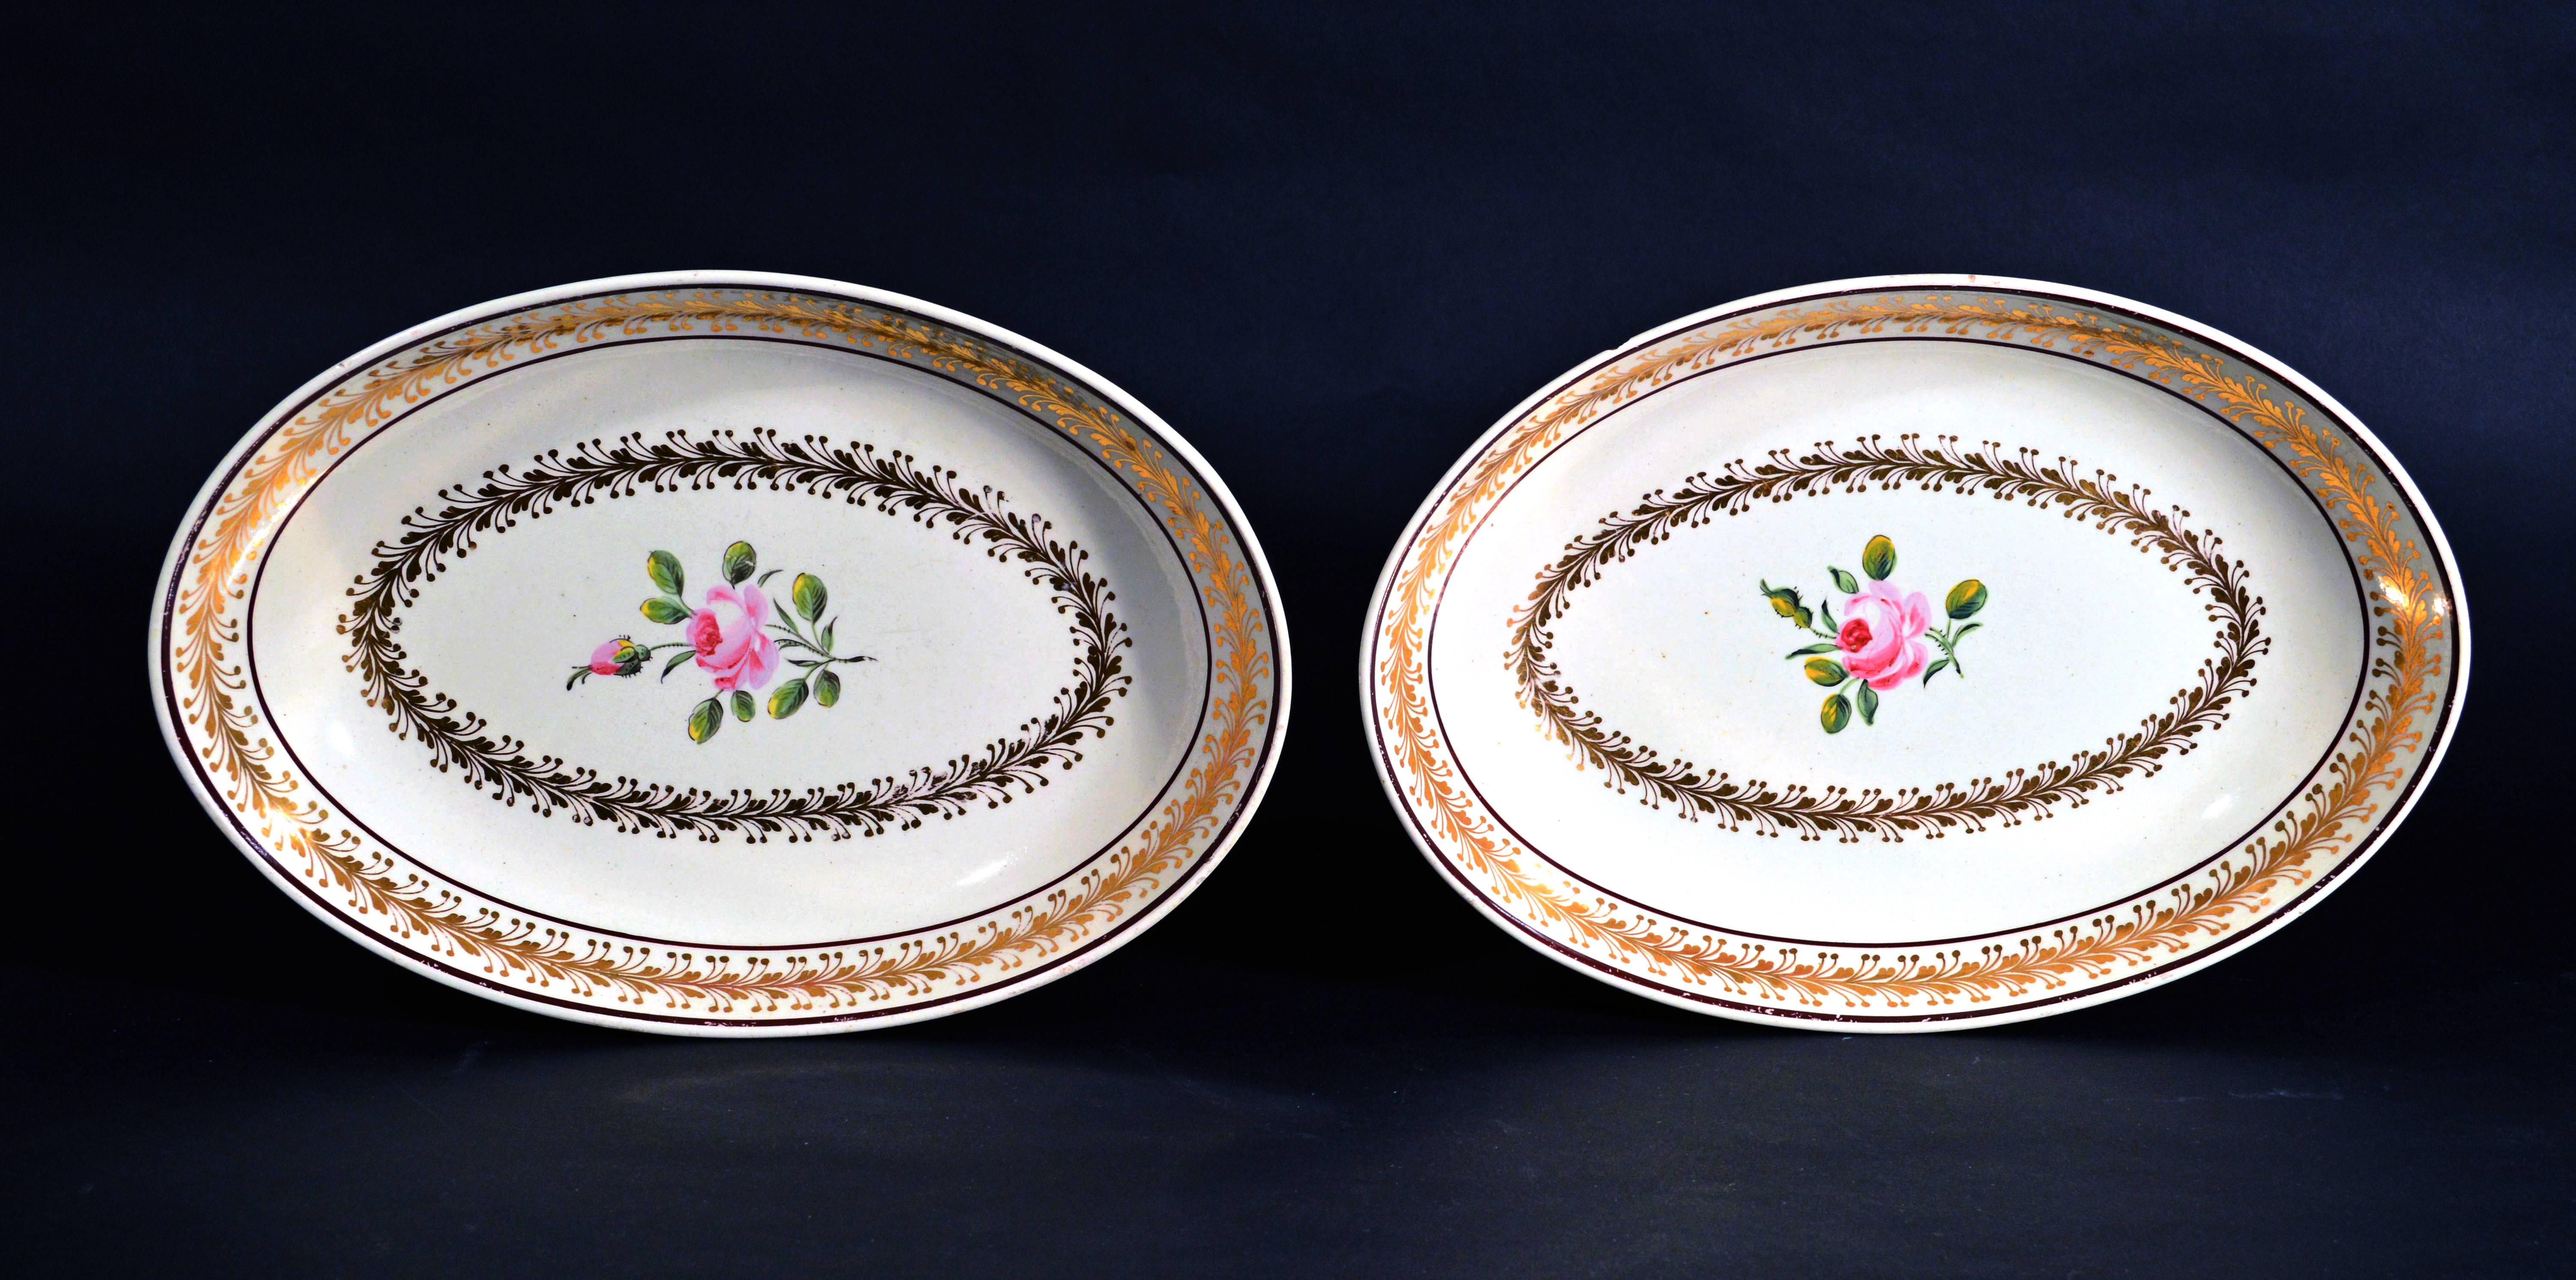 Creamware Paire de plats botaniques en poterie anglaise du XVIIIe siècle,
Poterie Neale.

Les plats ovales sont d'une riche couleur crème et sont peints à l'intérieur d'une tige de rose avec une rose ouverte et un bouton de rose. 

Autour du